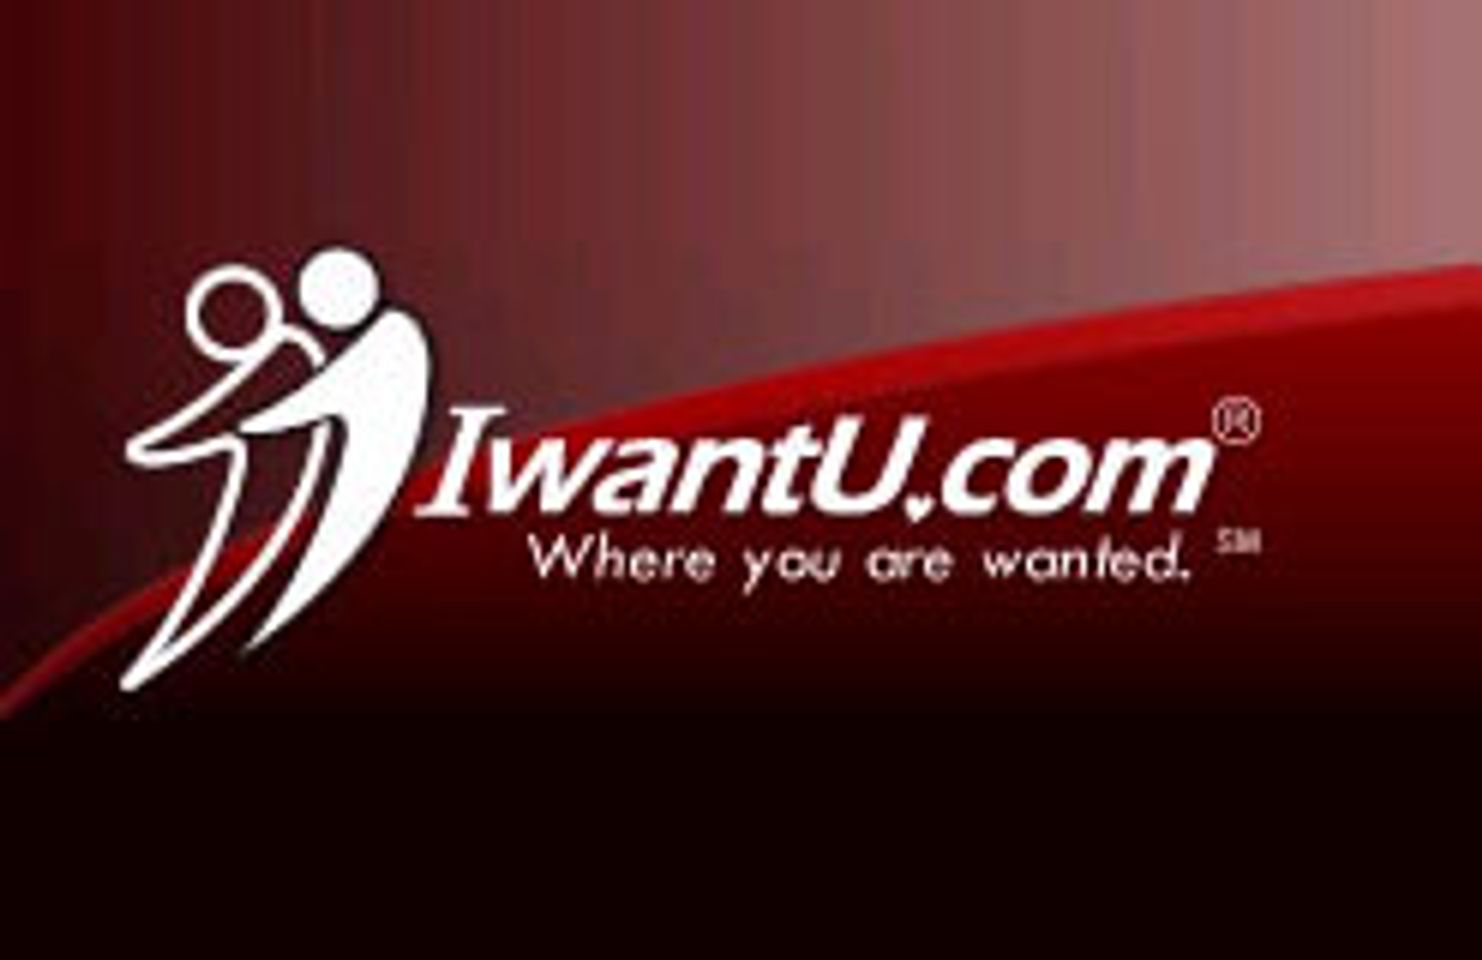 IwantU.com Launches Affiliate Program Version 4.0